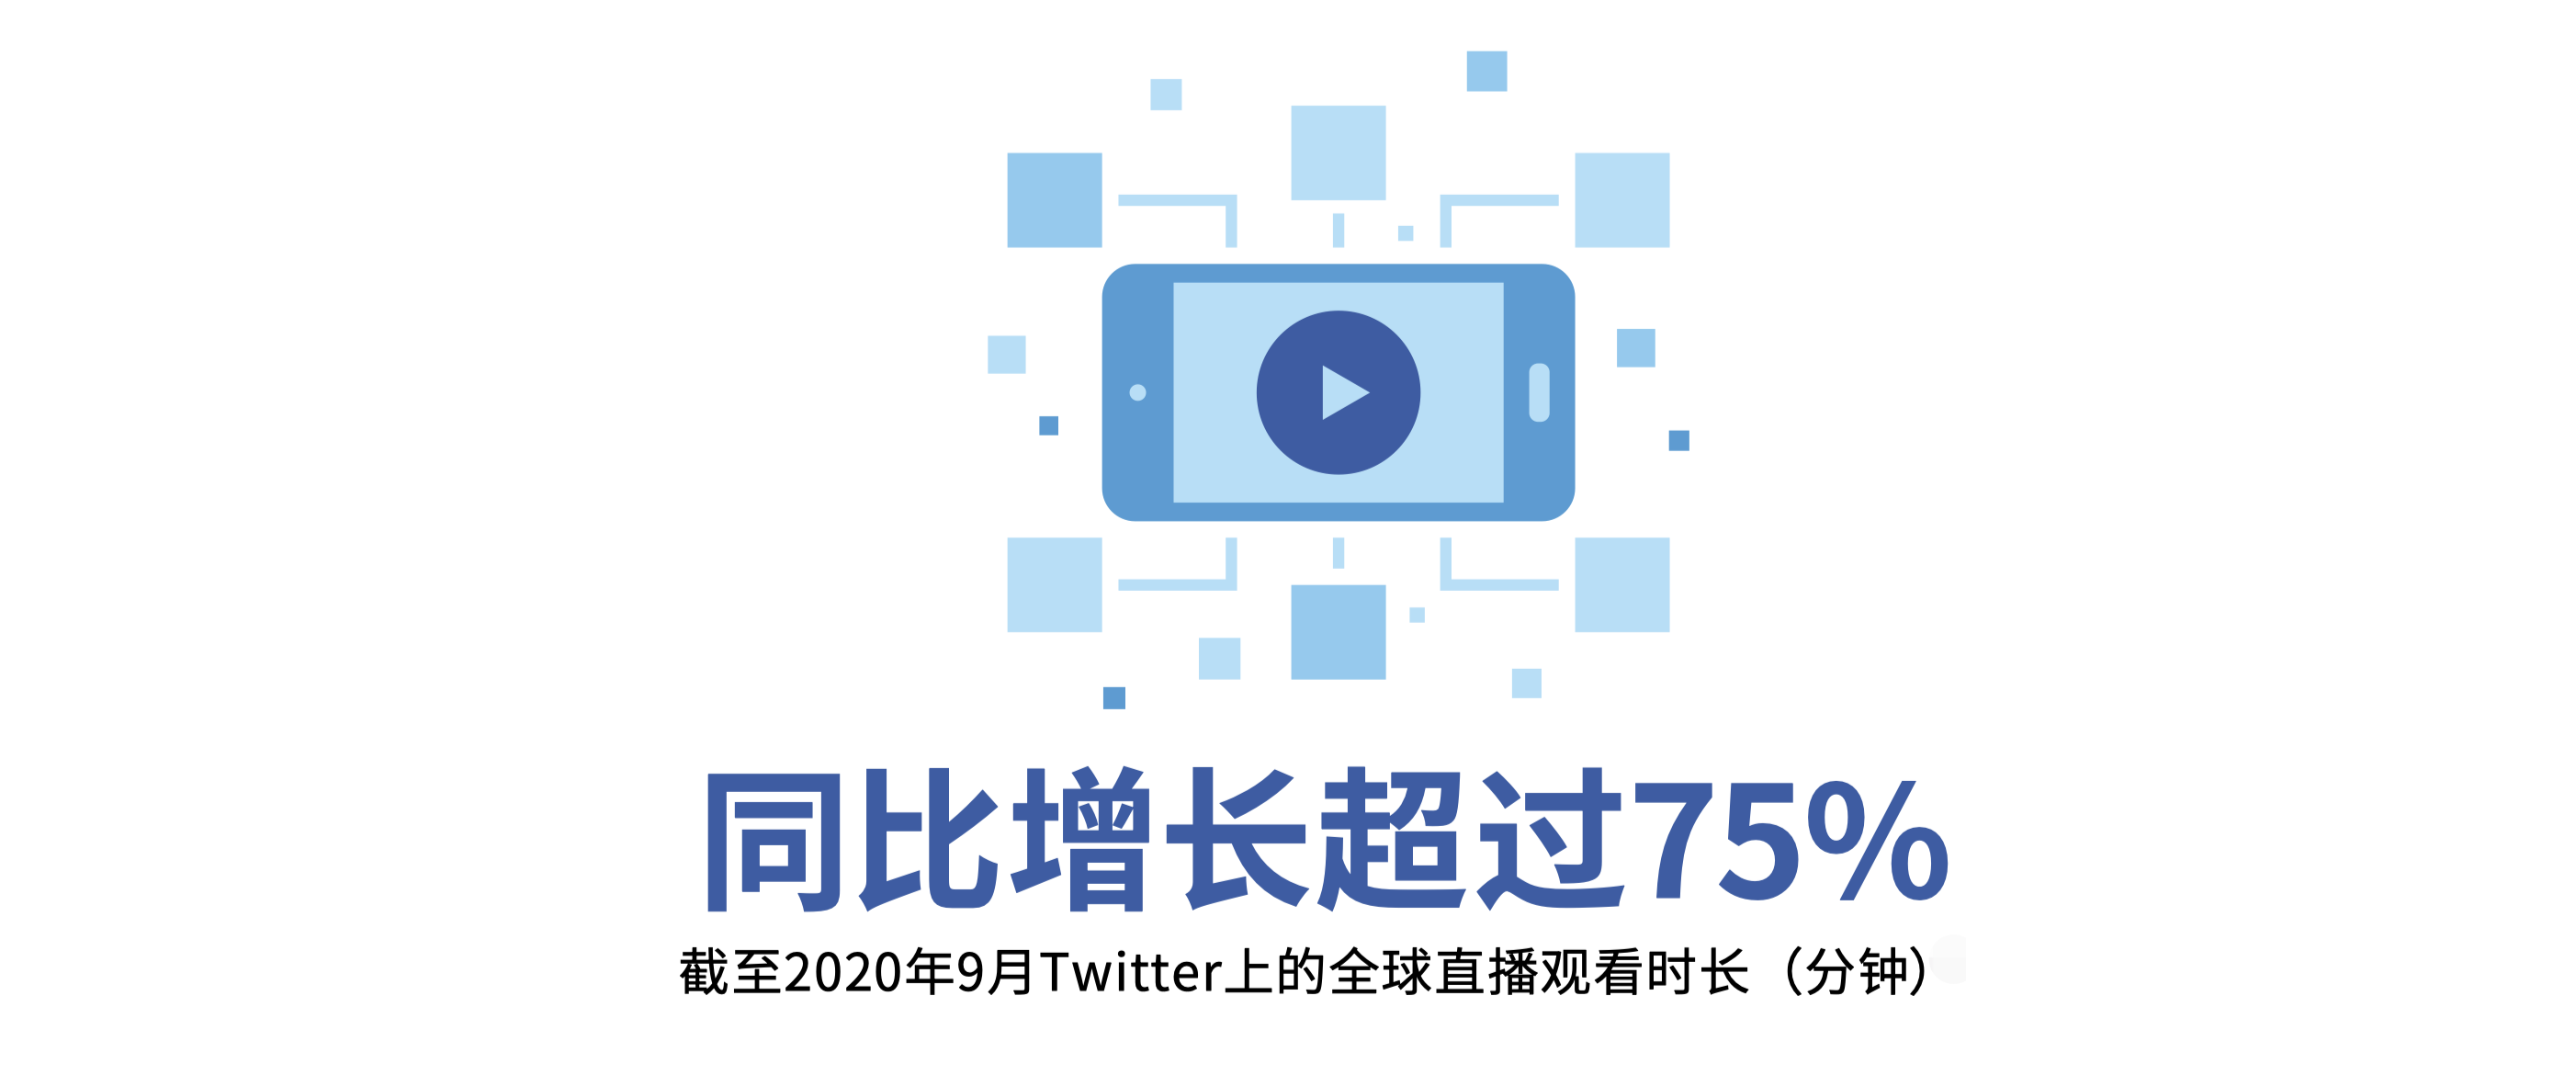 数据来源于：《2020年Twitter中国出海领导品牌报告》